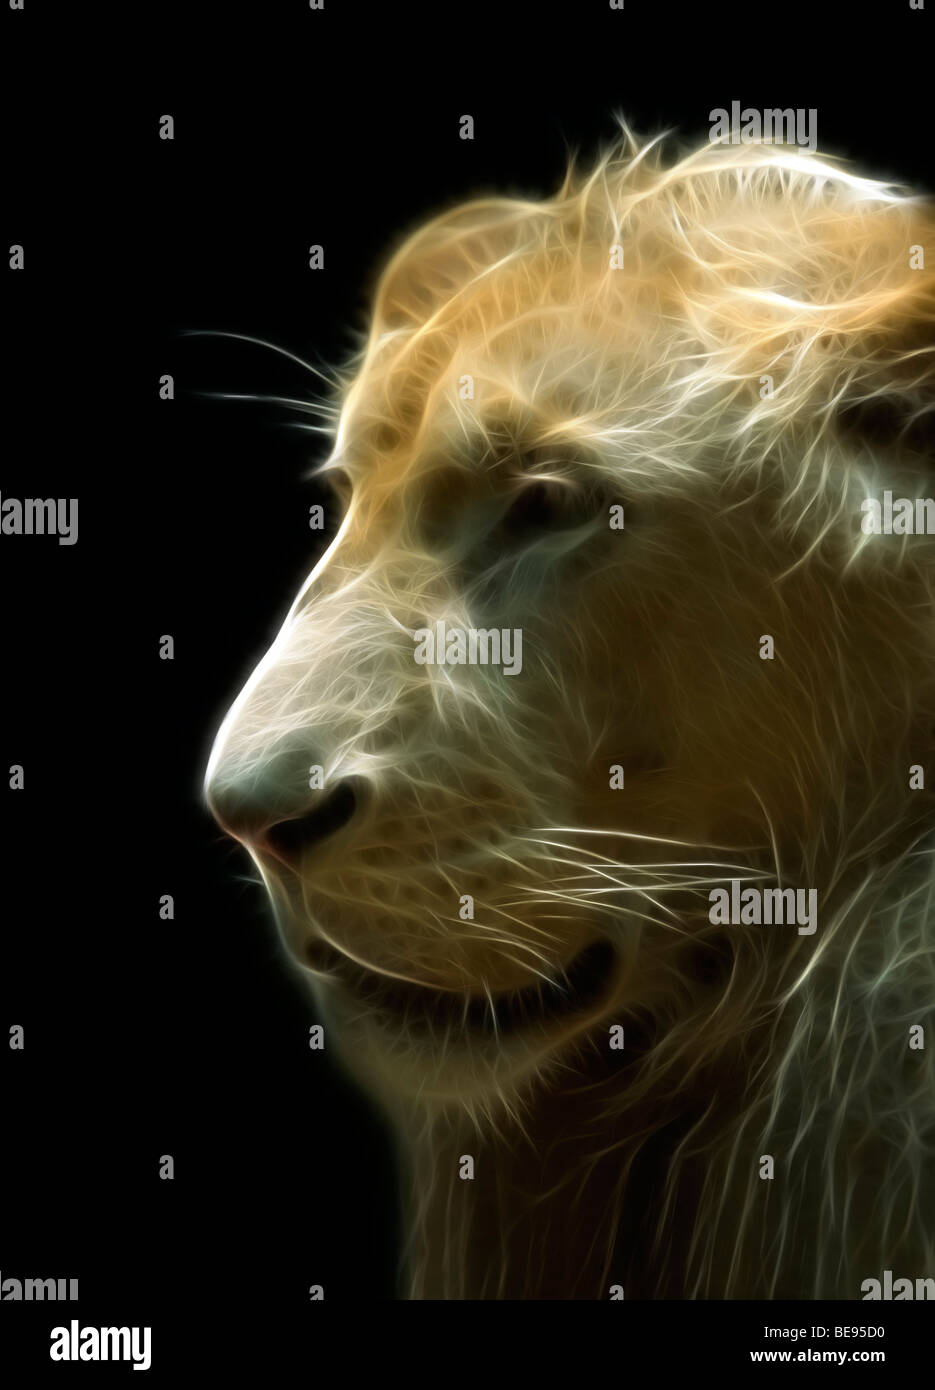 A digitally illustrated head of an old lion (Panthera leo). Portrait d'un vieux lion (dessin assisté par ordinateur). Stock Photo